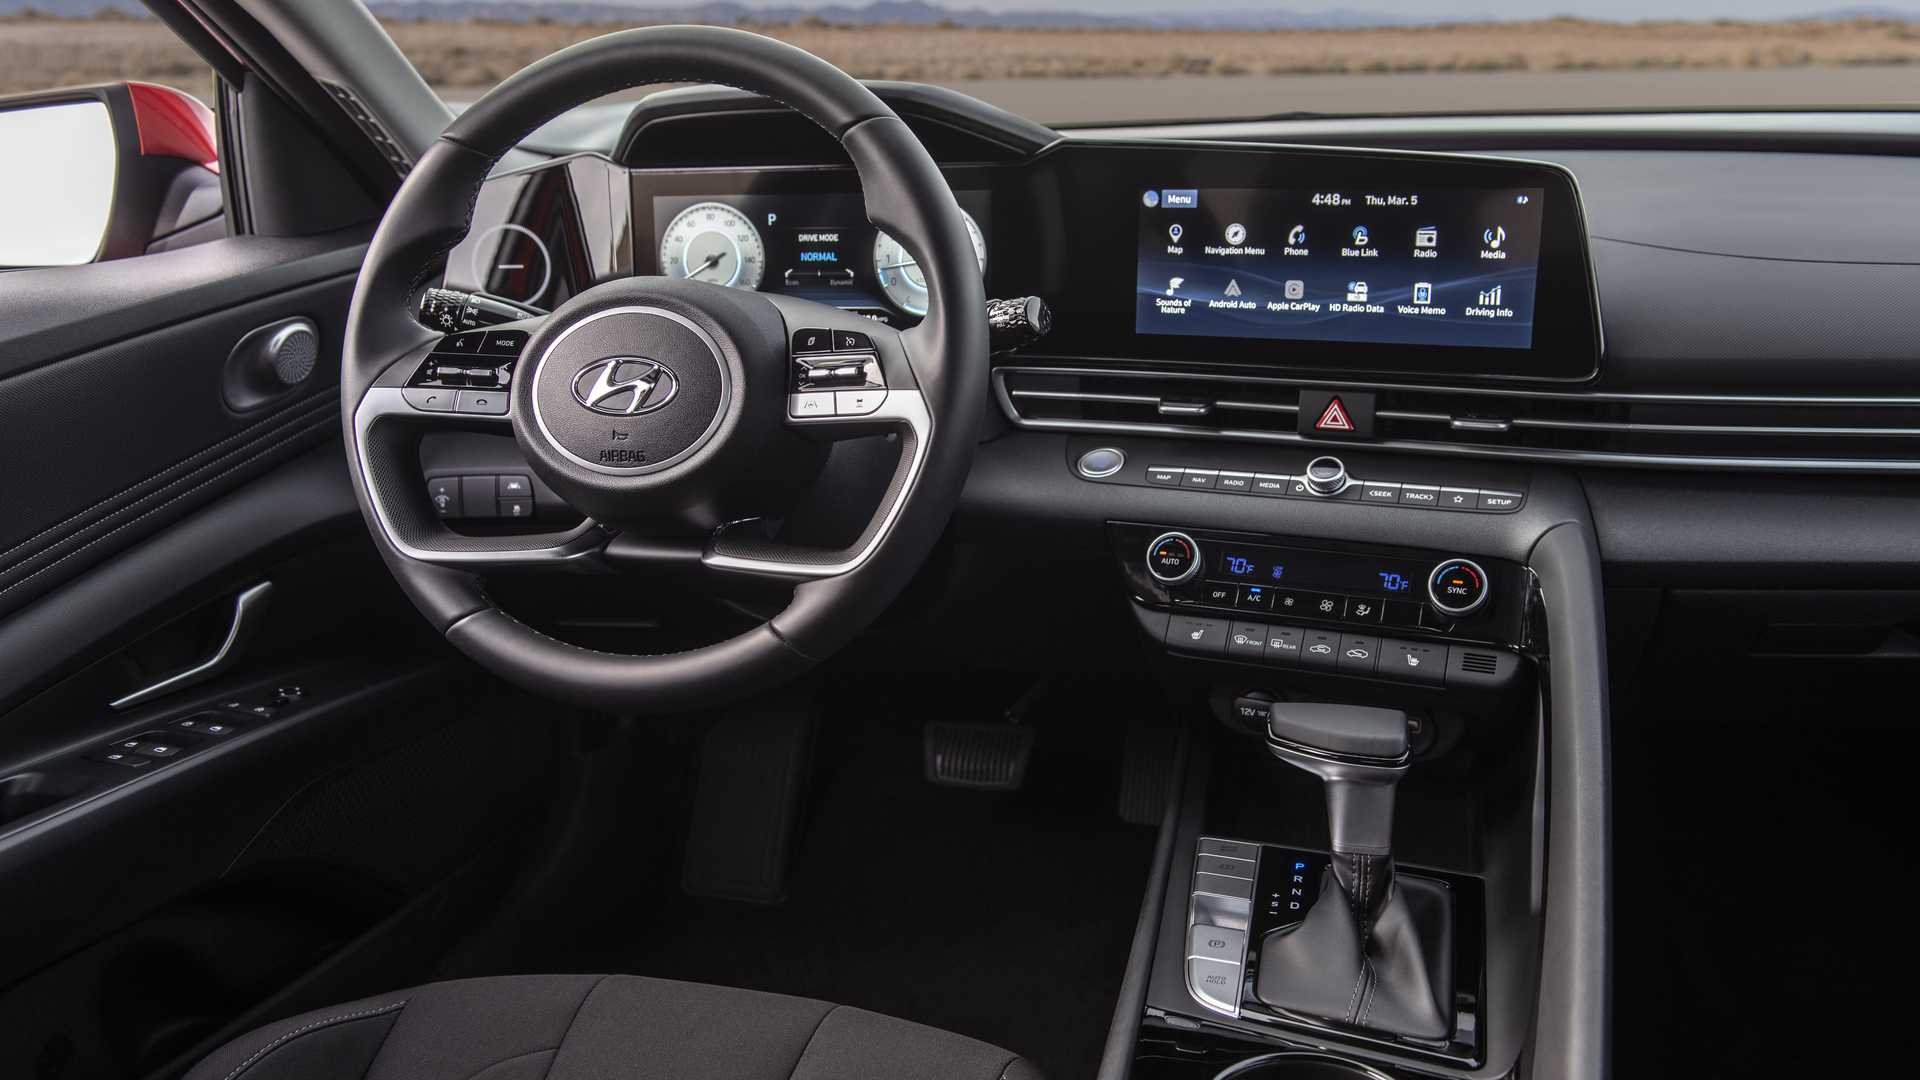 Hyundai Elantra 2021 ra mắt với trang bị, ngoại hình không thua gì xe Mẹc